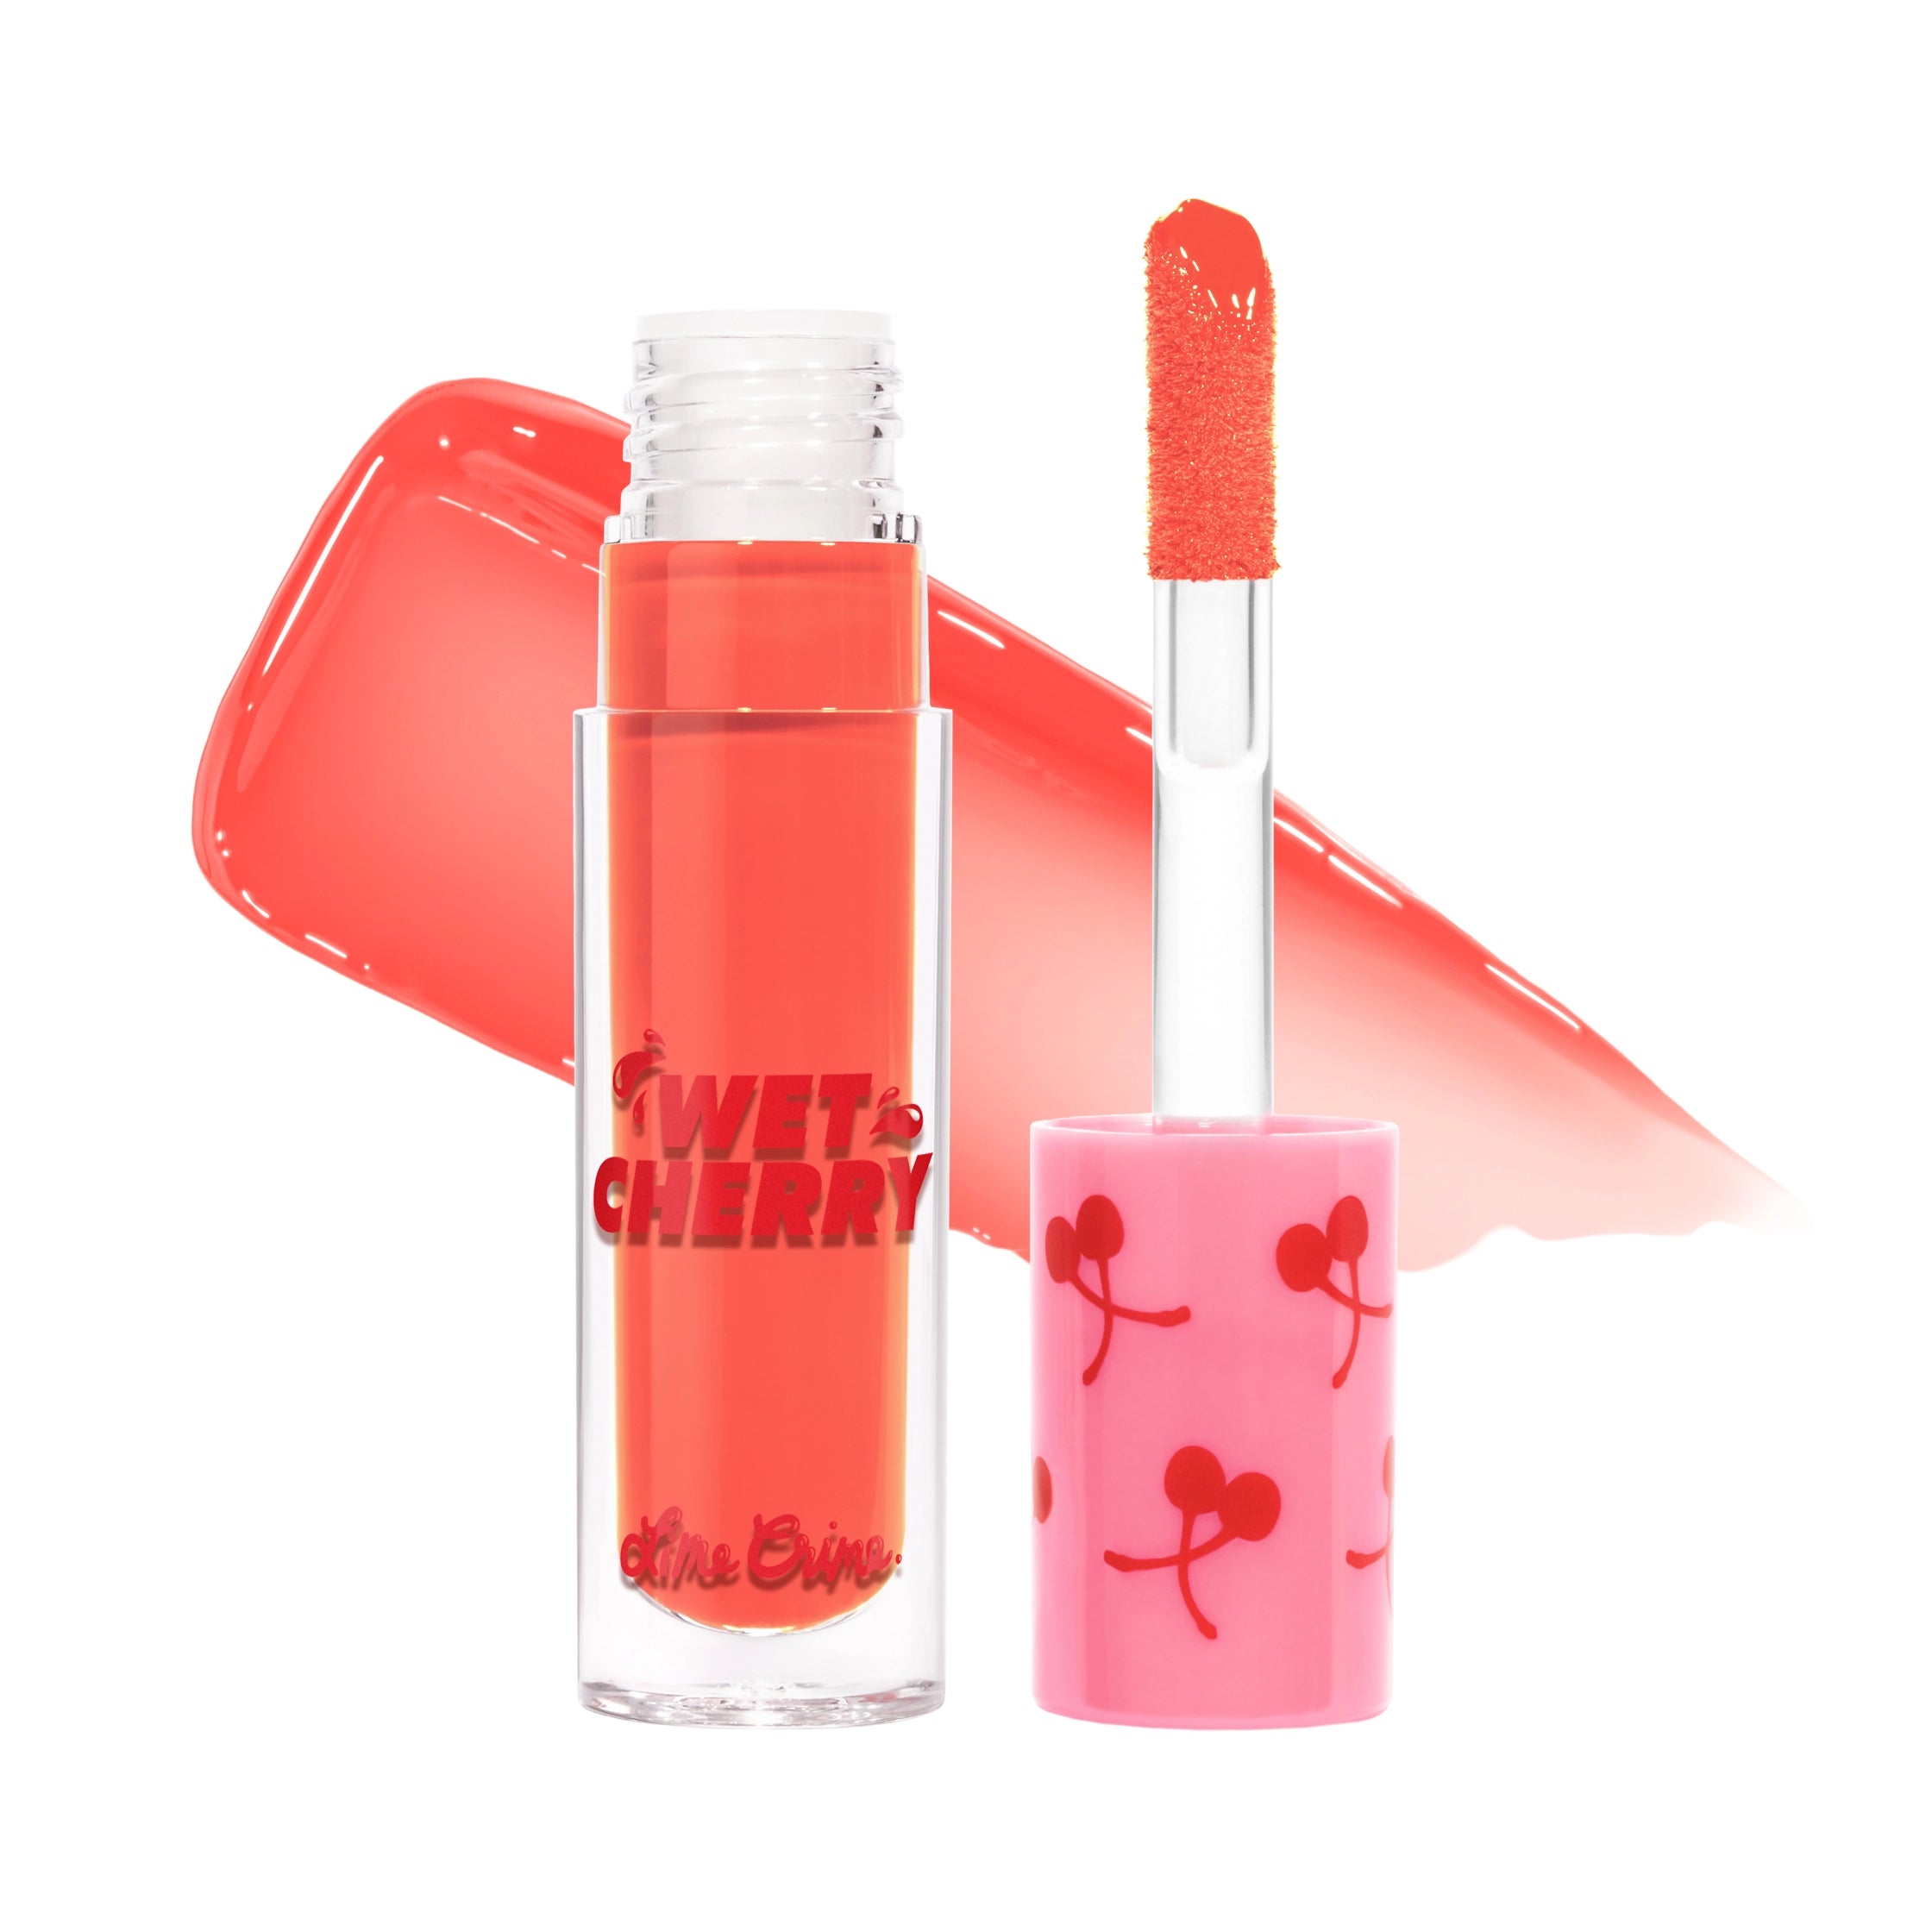 Wet Cherry Lip Gloss variant:Flaming Cherry